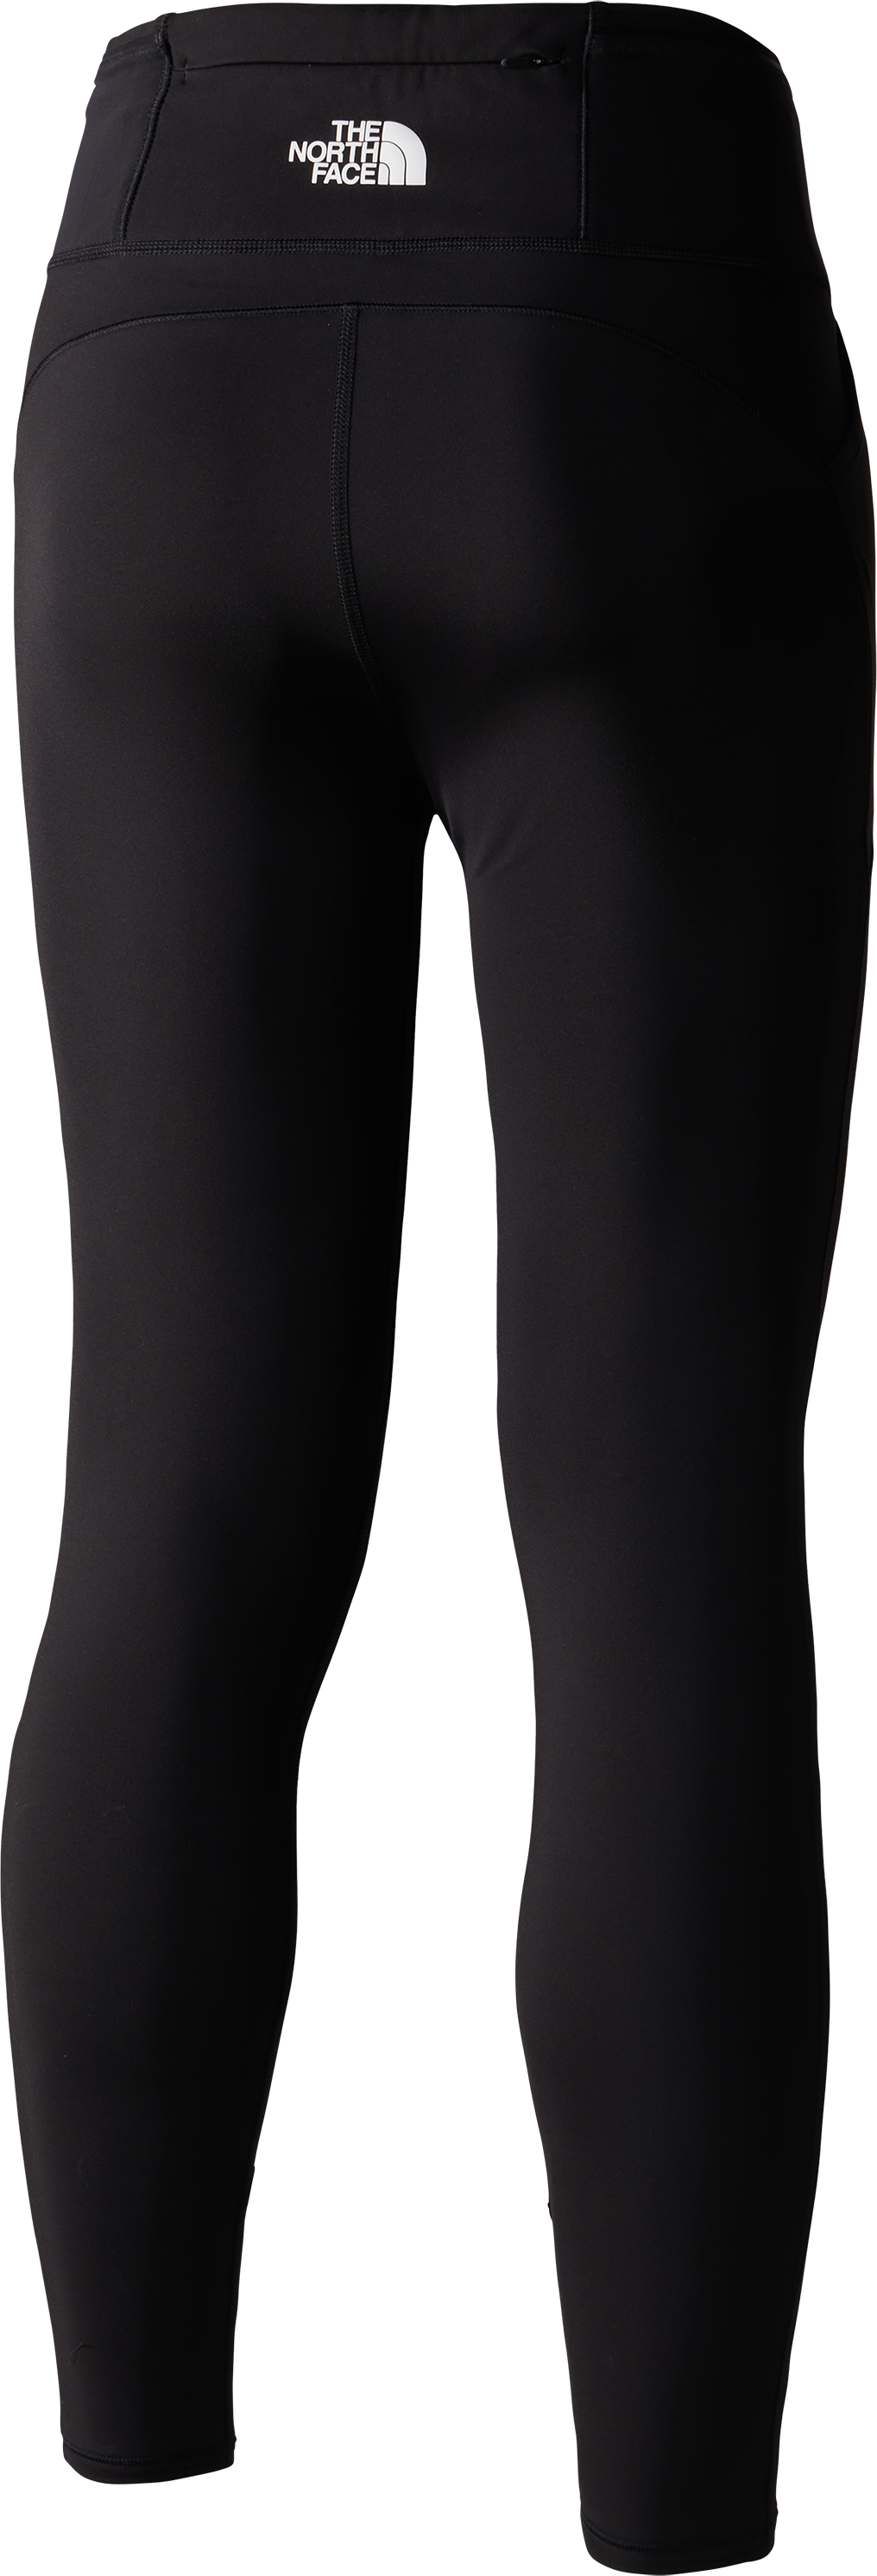 Women's Winter Warm Pro Leggings TNF BLACK, Buy Women's Winter Warm Pro  Leggings TNF BLACK here